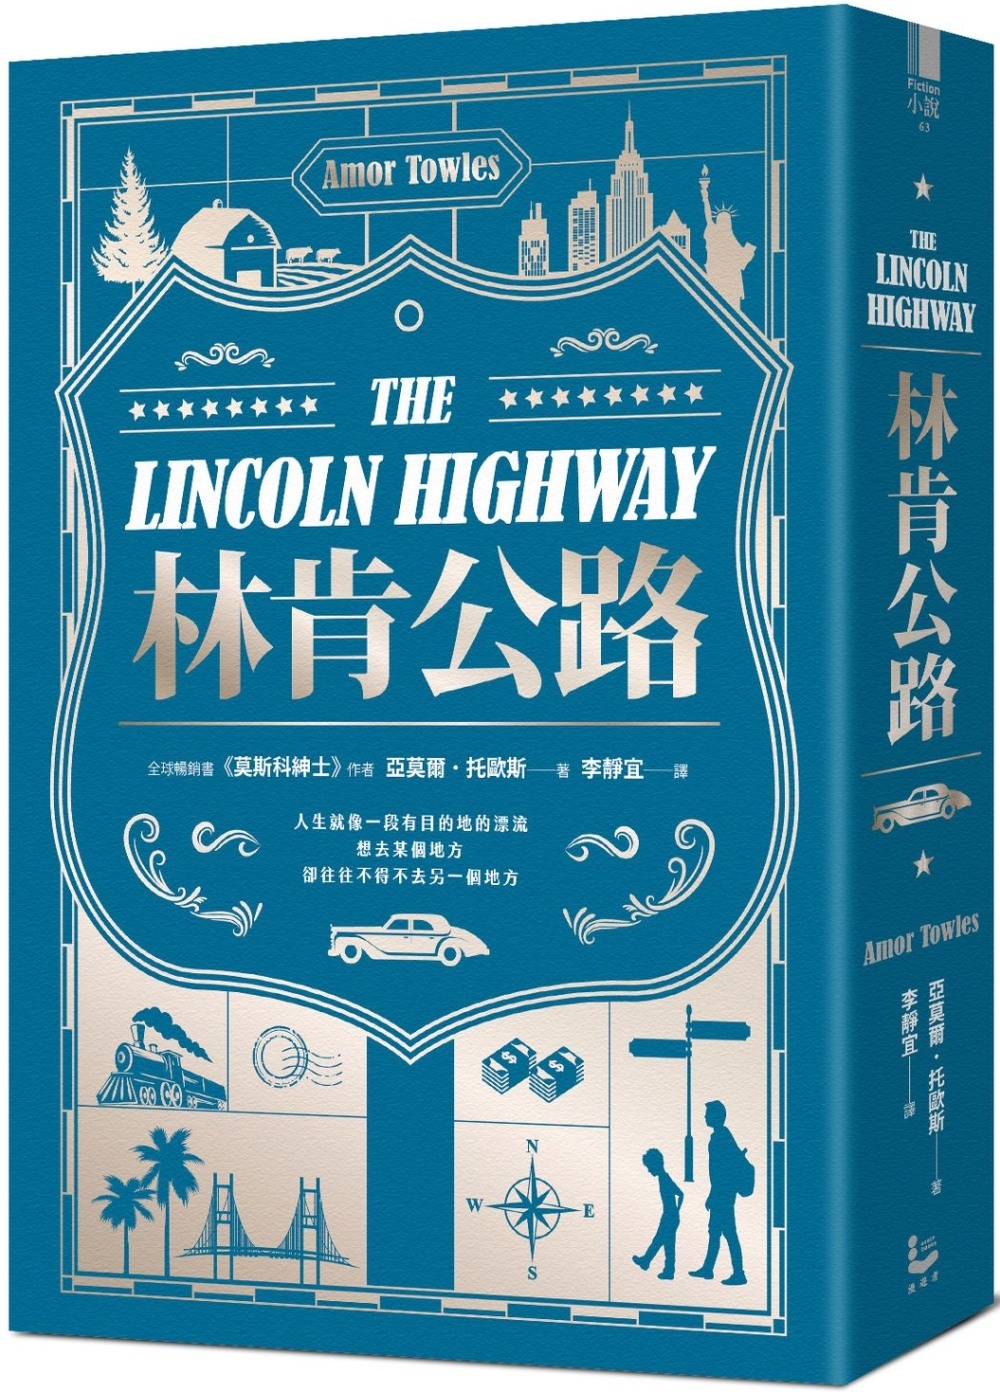 林肯公路【全球暢銷300萬冊作家托歐斯繼《莫斯科紳士》後的百萬銷售新作】